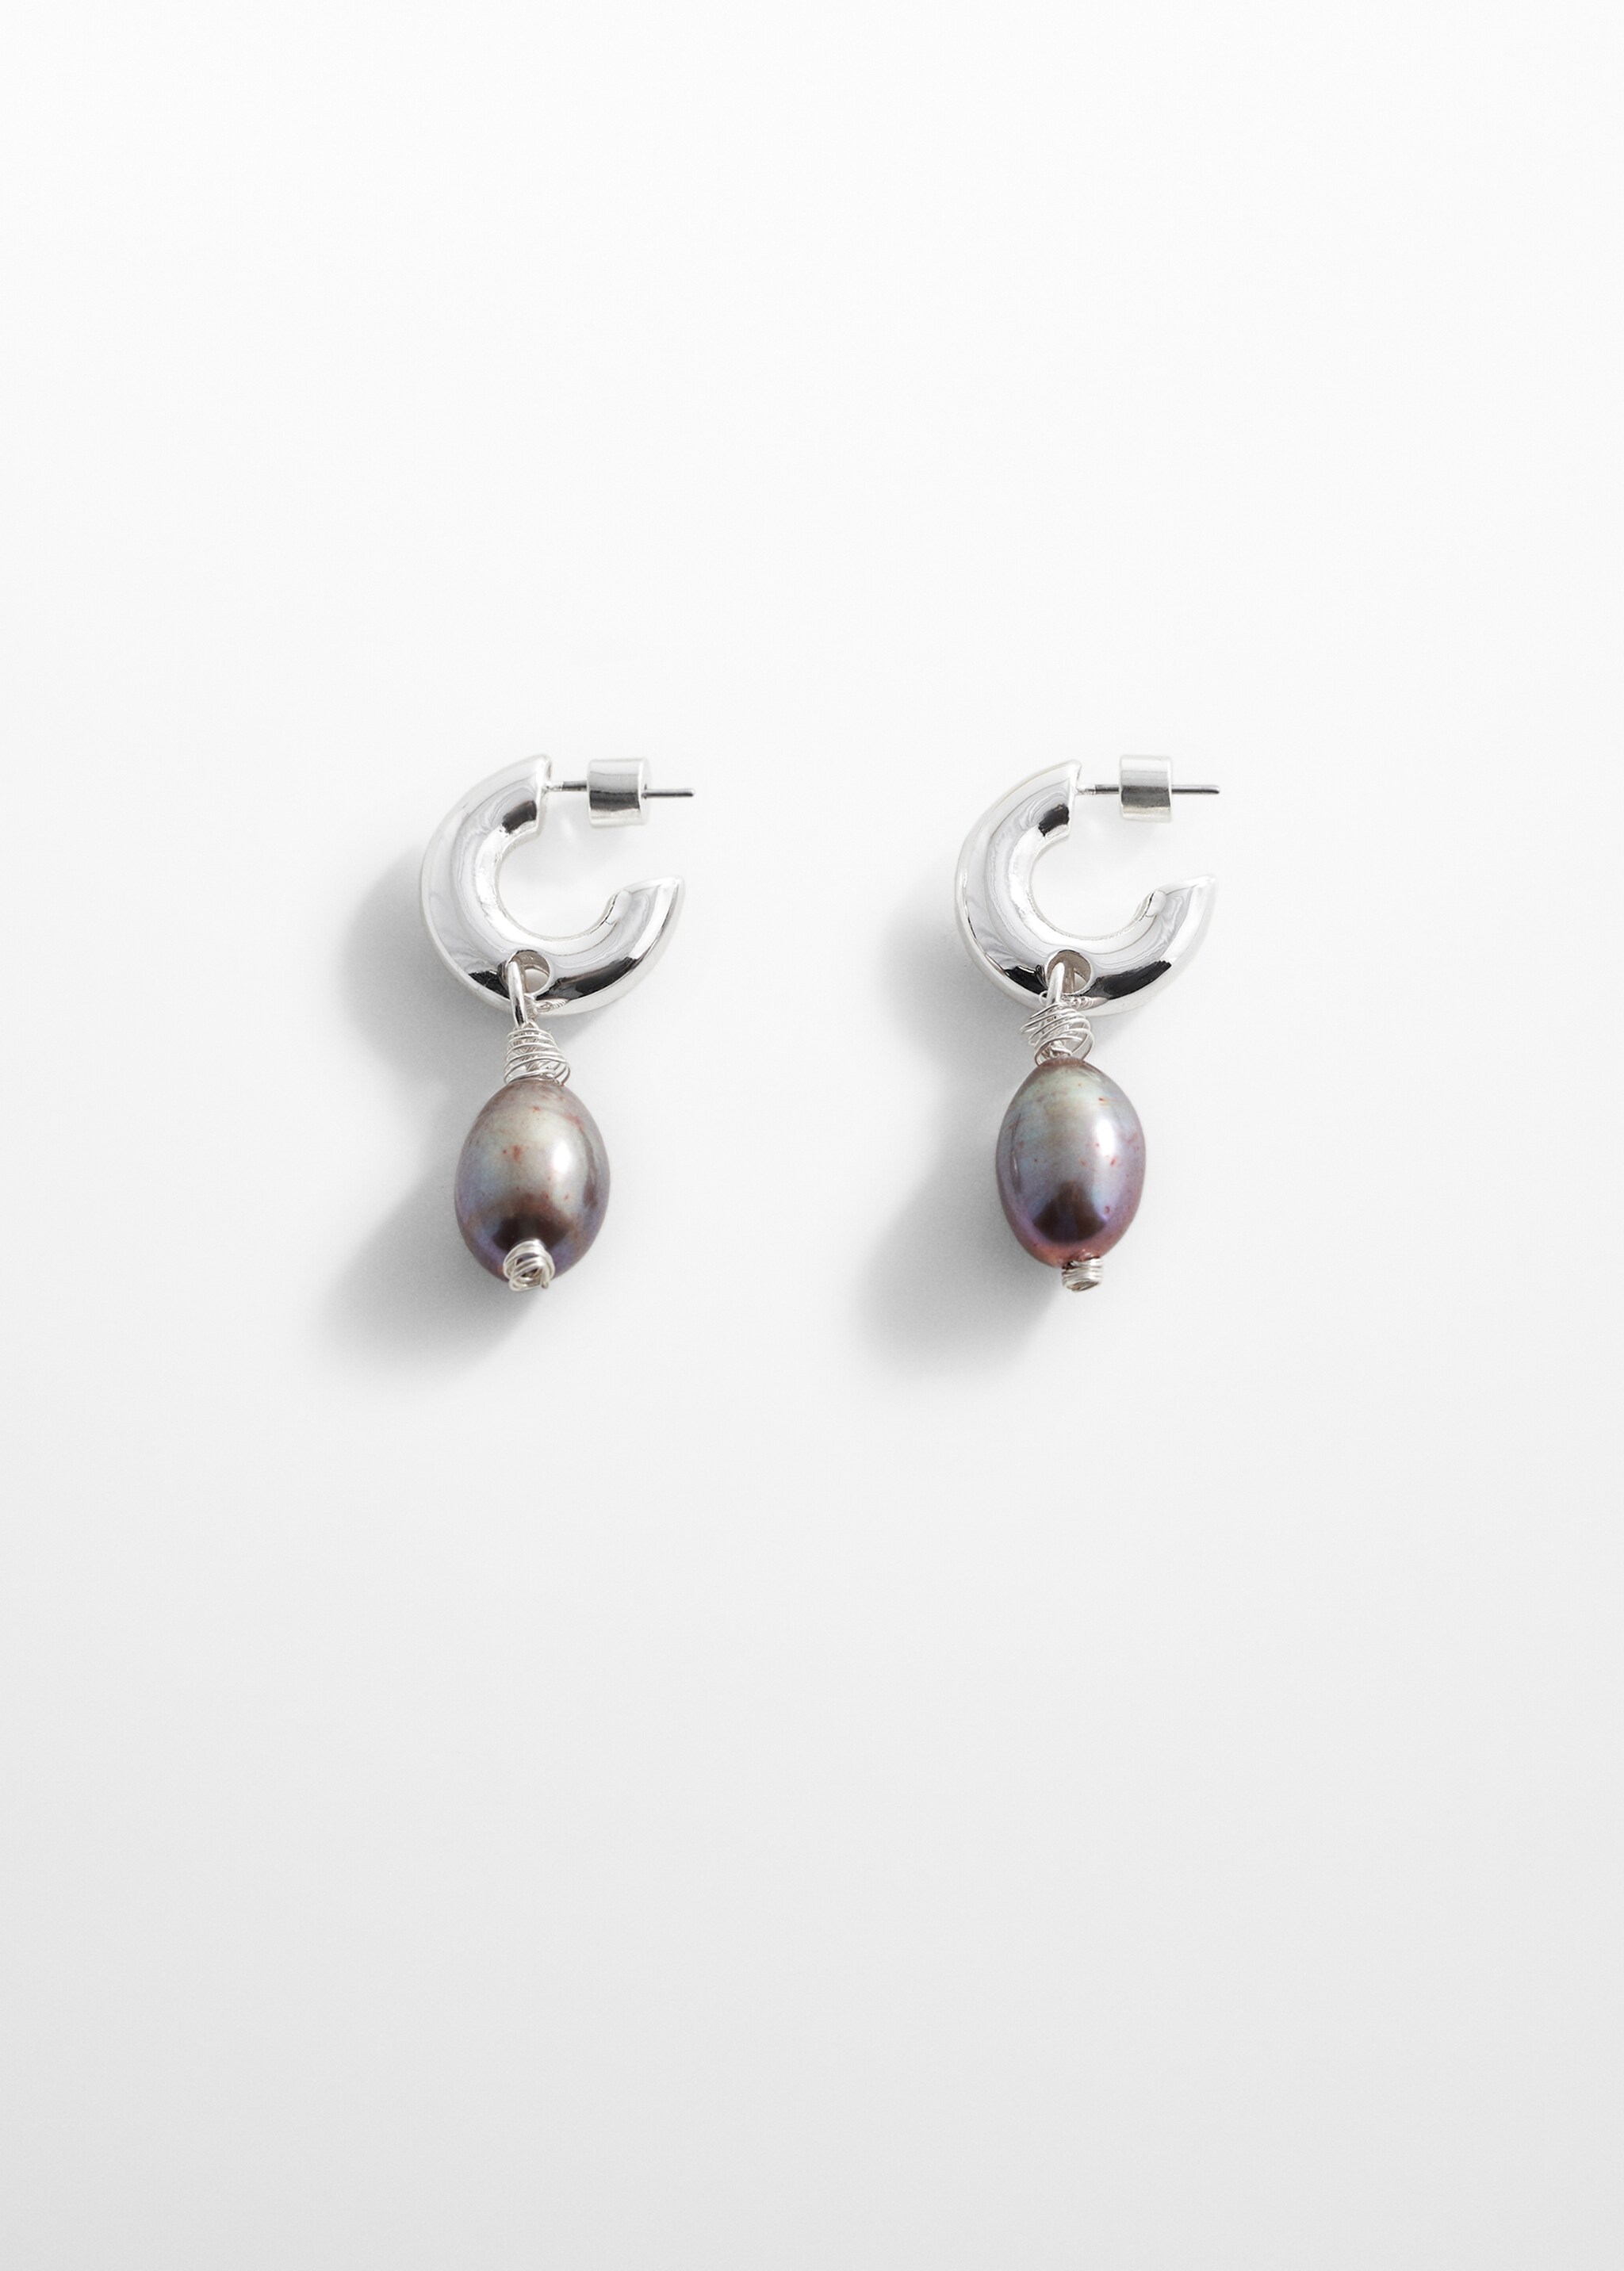 Orecchini pendente perla naturale - Articolo senza modello